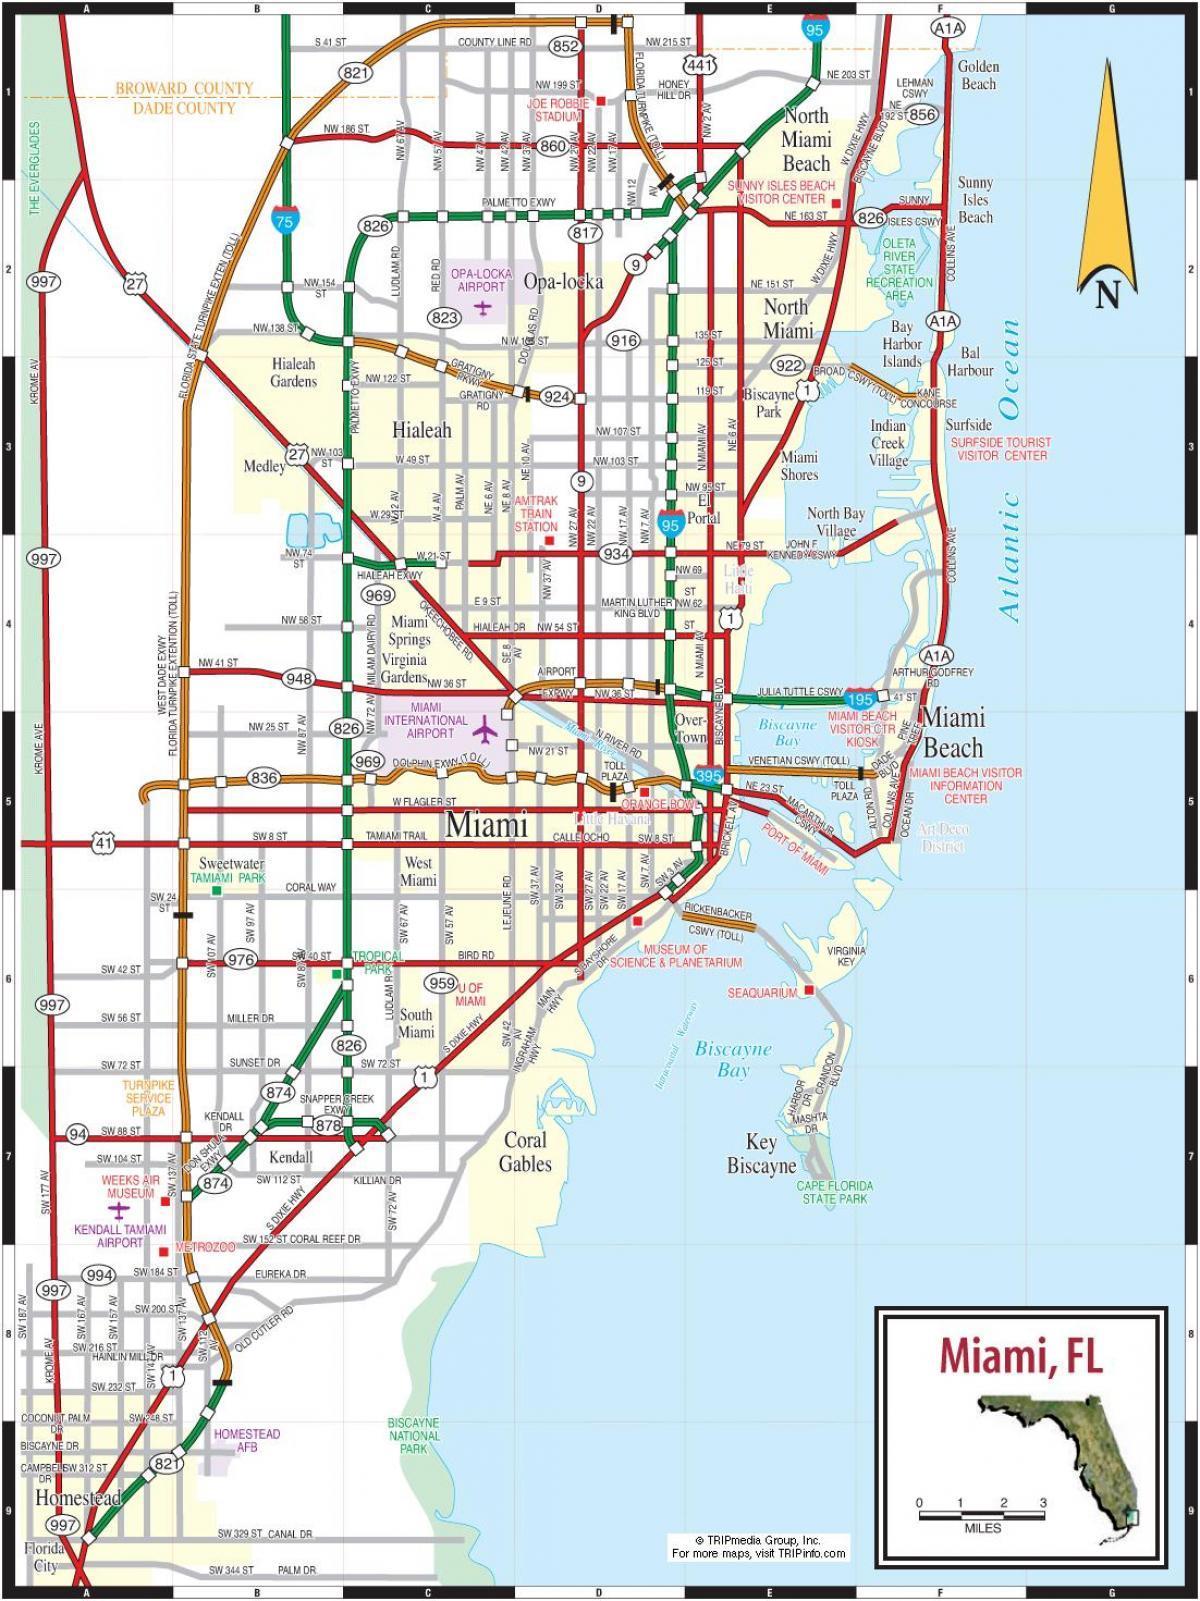 tolwegen in Miami kaart bekijken